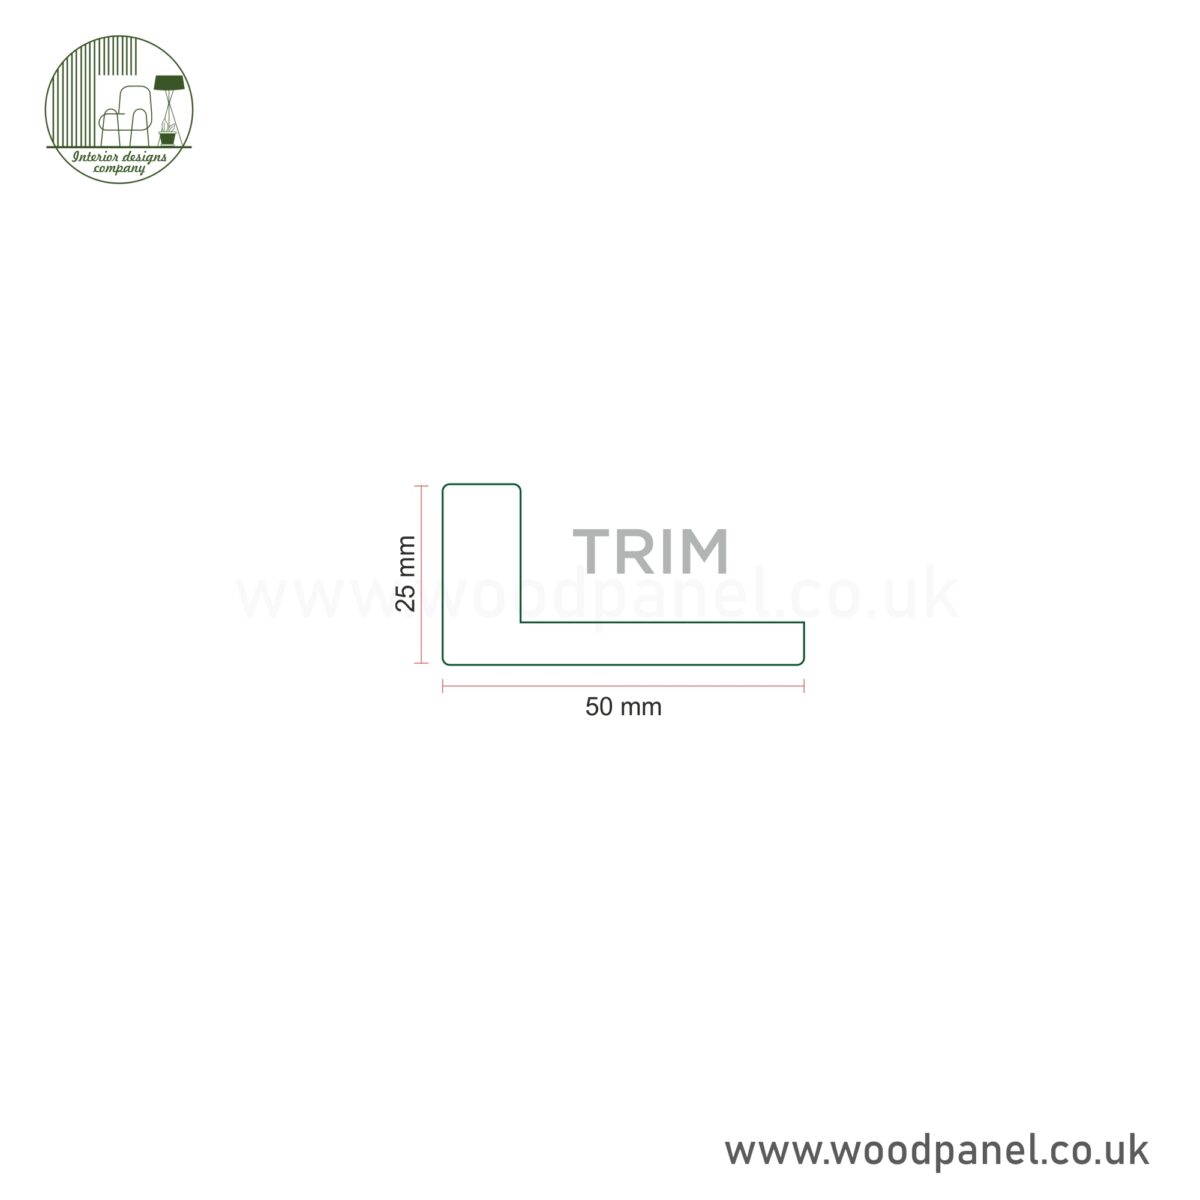 Trim 1 Purity Top/Bottom Trim Cap Canvas Core Paintable Wood Panel ST125